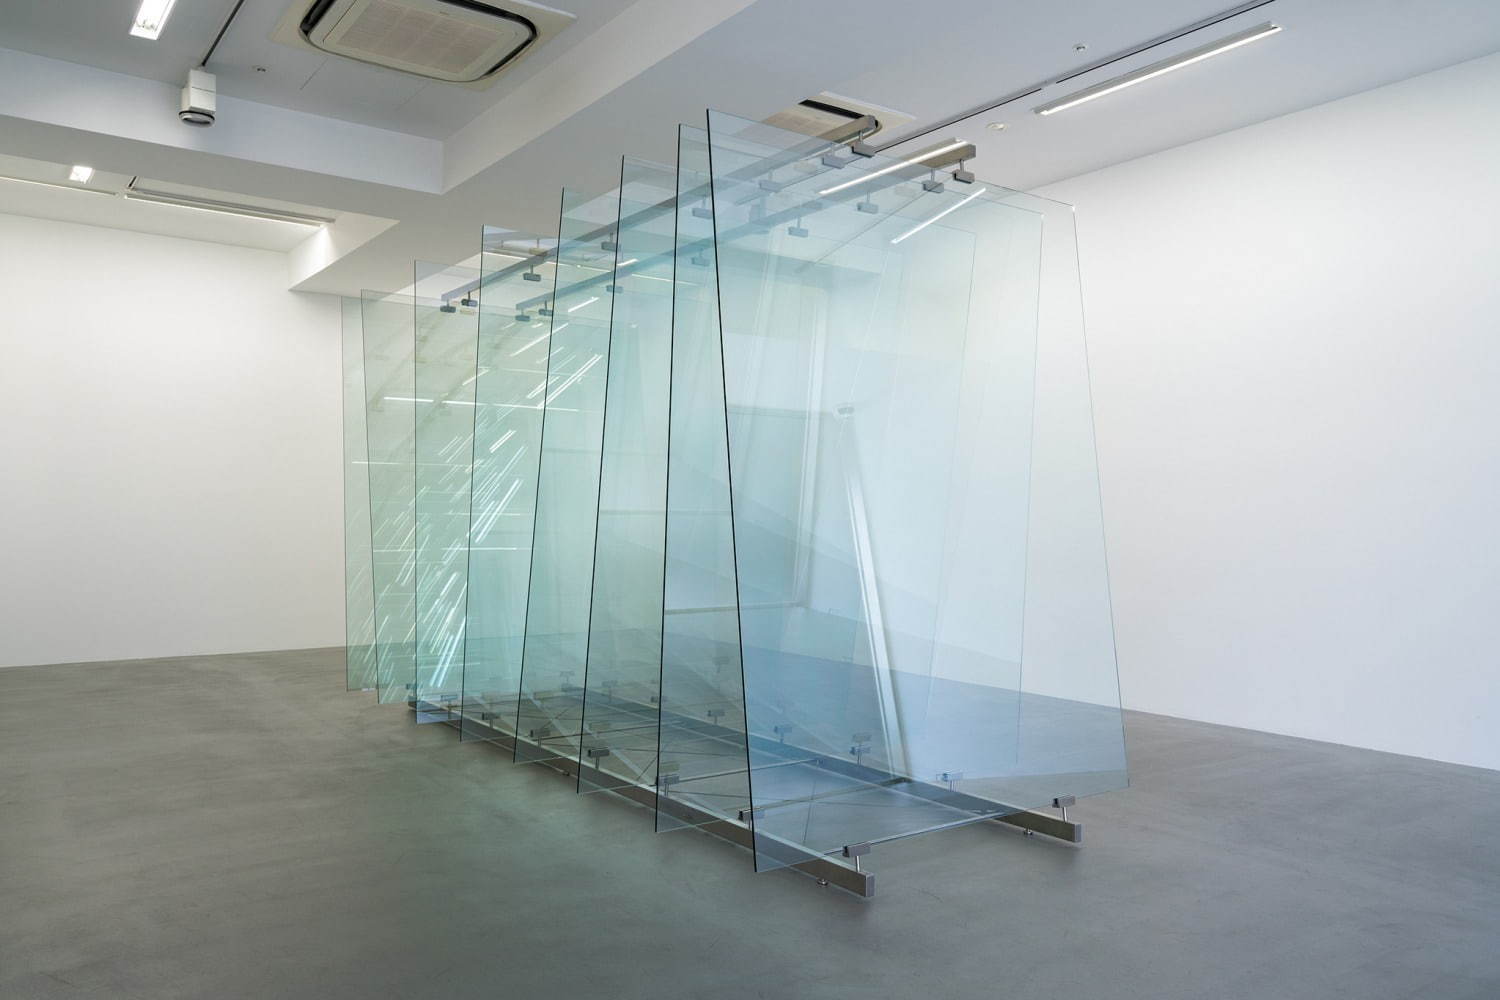 ゲルハルト・リヒター 《8 枚のガラス》 2012 年 ガラス、スチール構造物 230×160×378cm 
ワコウ・ワークス・オブ・アート
© Gerhard Richter, courtesy of WAKO WORKS OF ART  Photo: Tomoki Imai